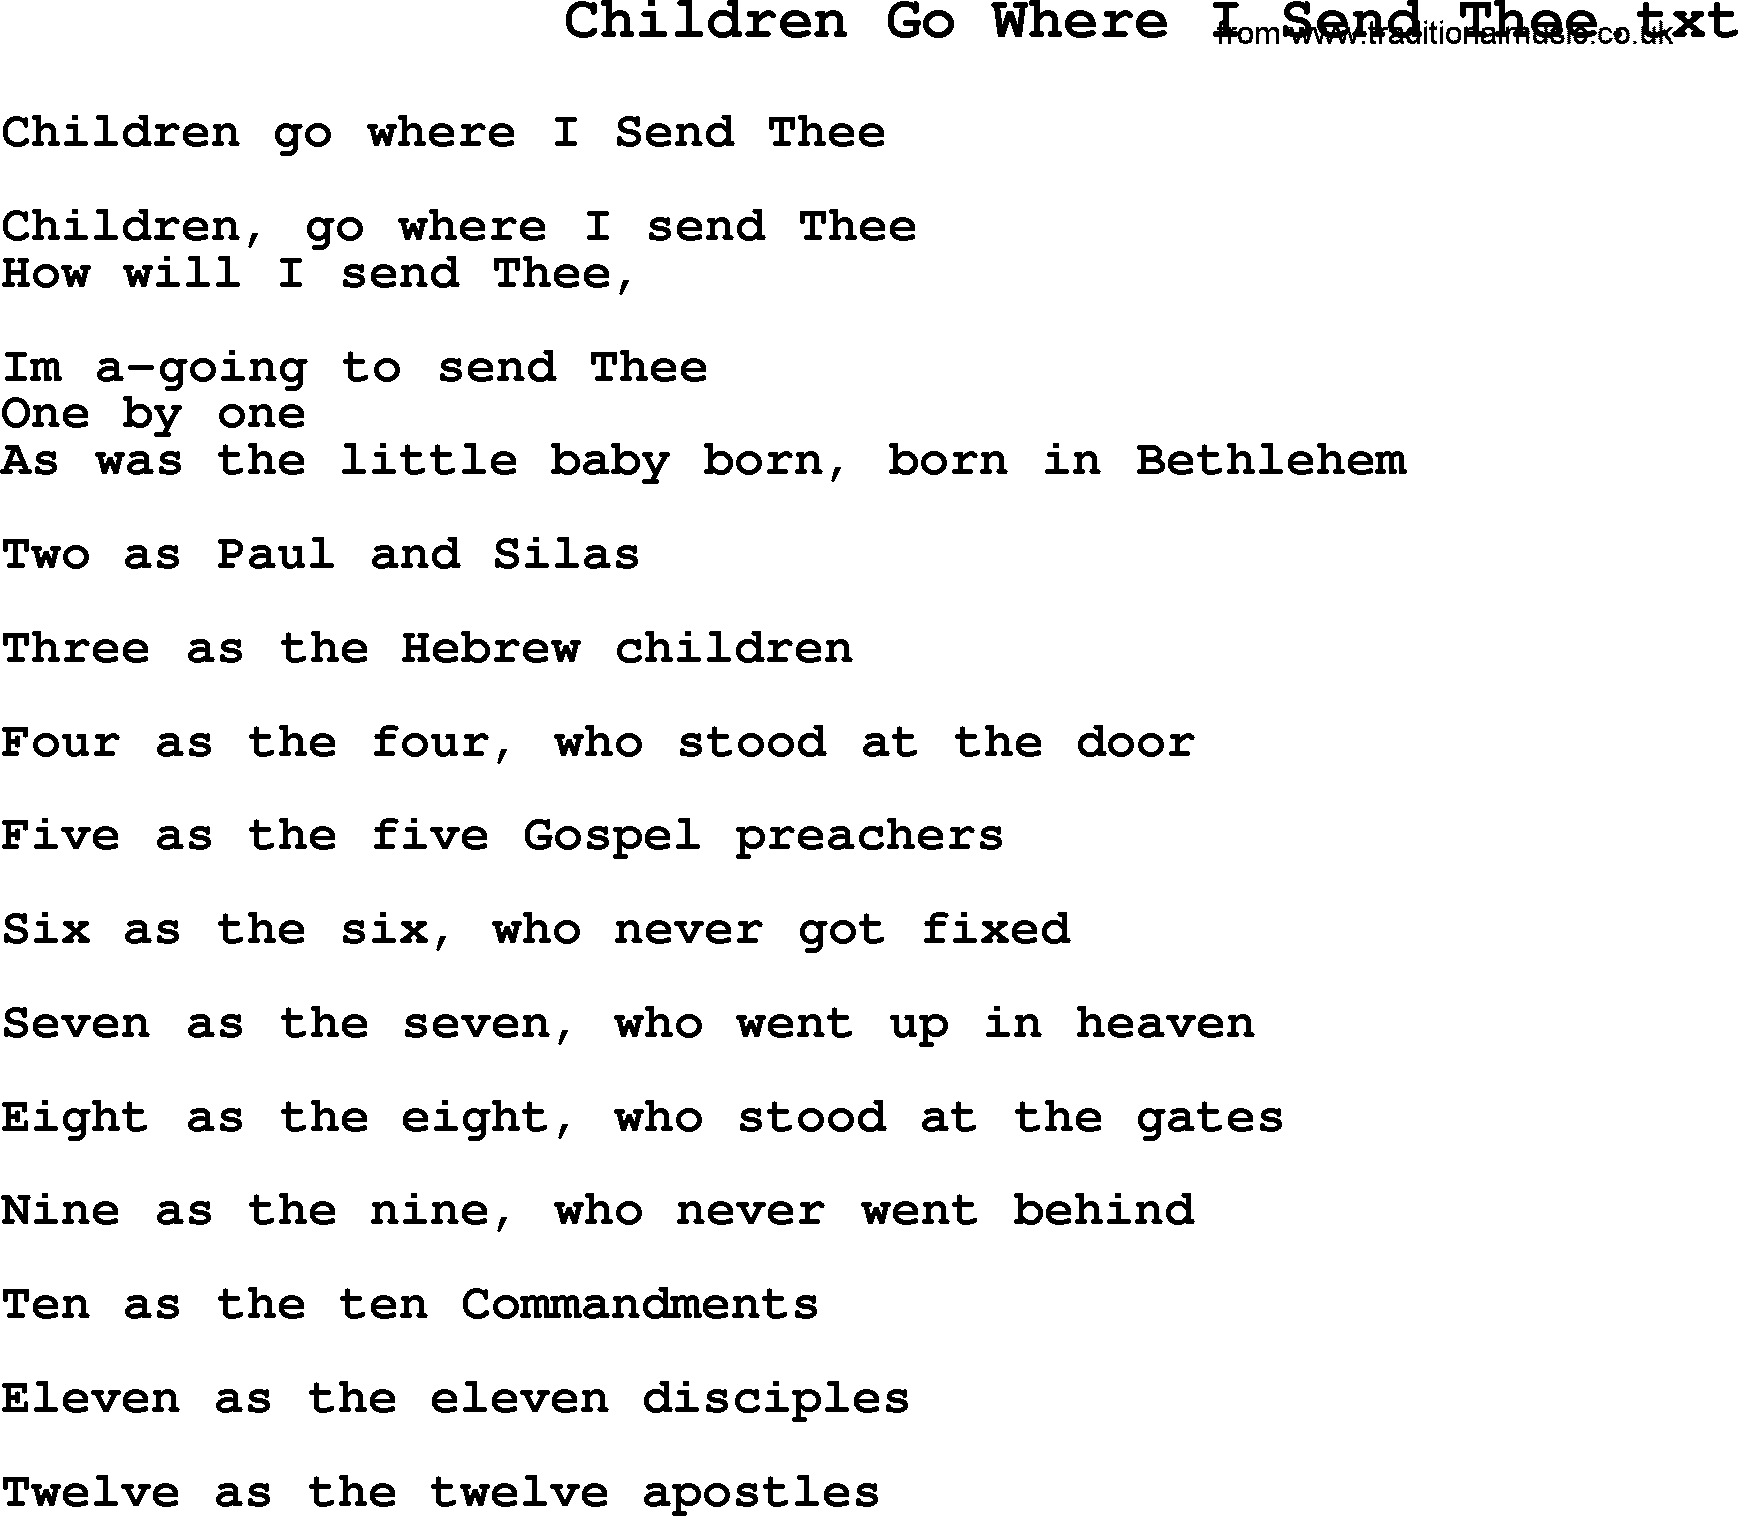 Negro Spiritual Song Lyrics for Children Go Where I Send Thee